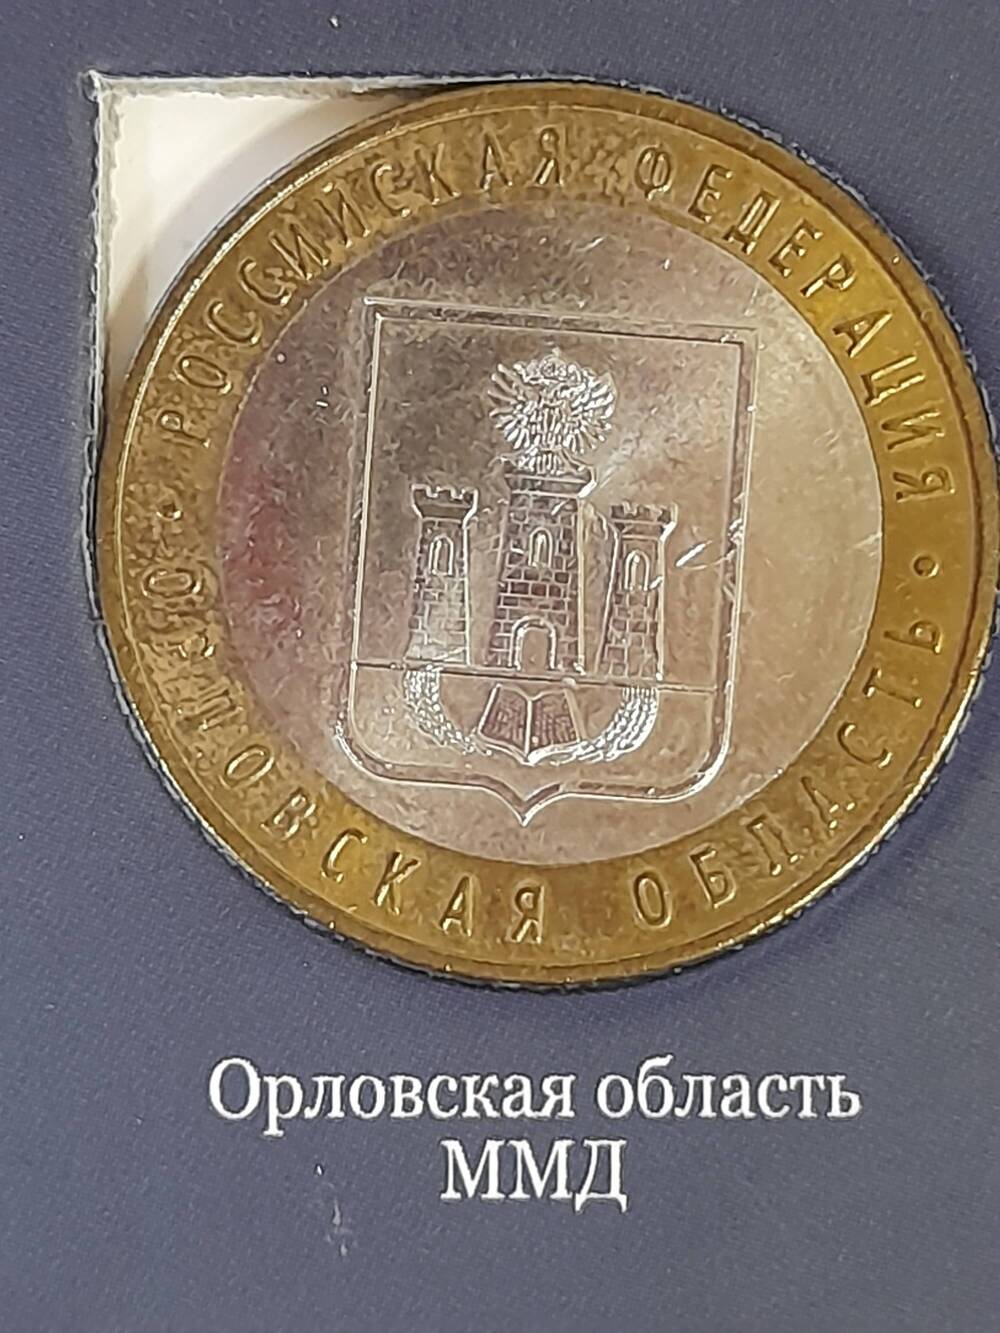 Монета памятная 10 РУБЛЕЙ. Орловская область 2005 г. Россия